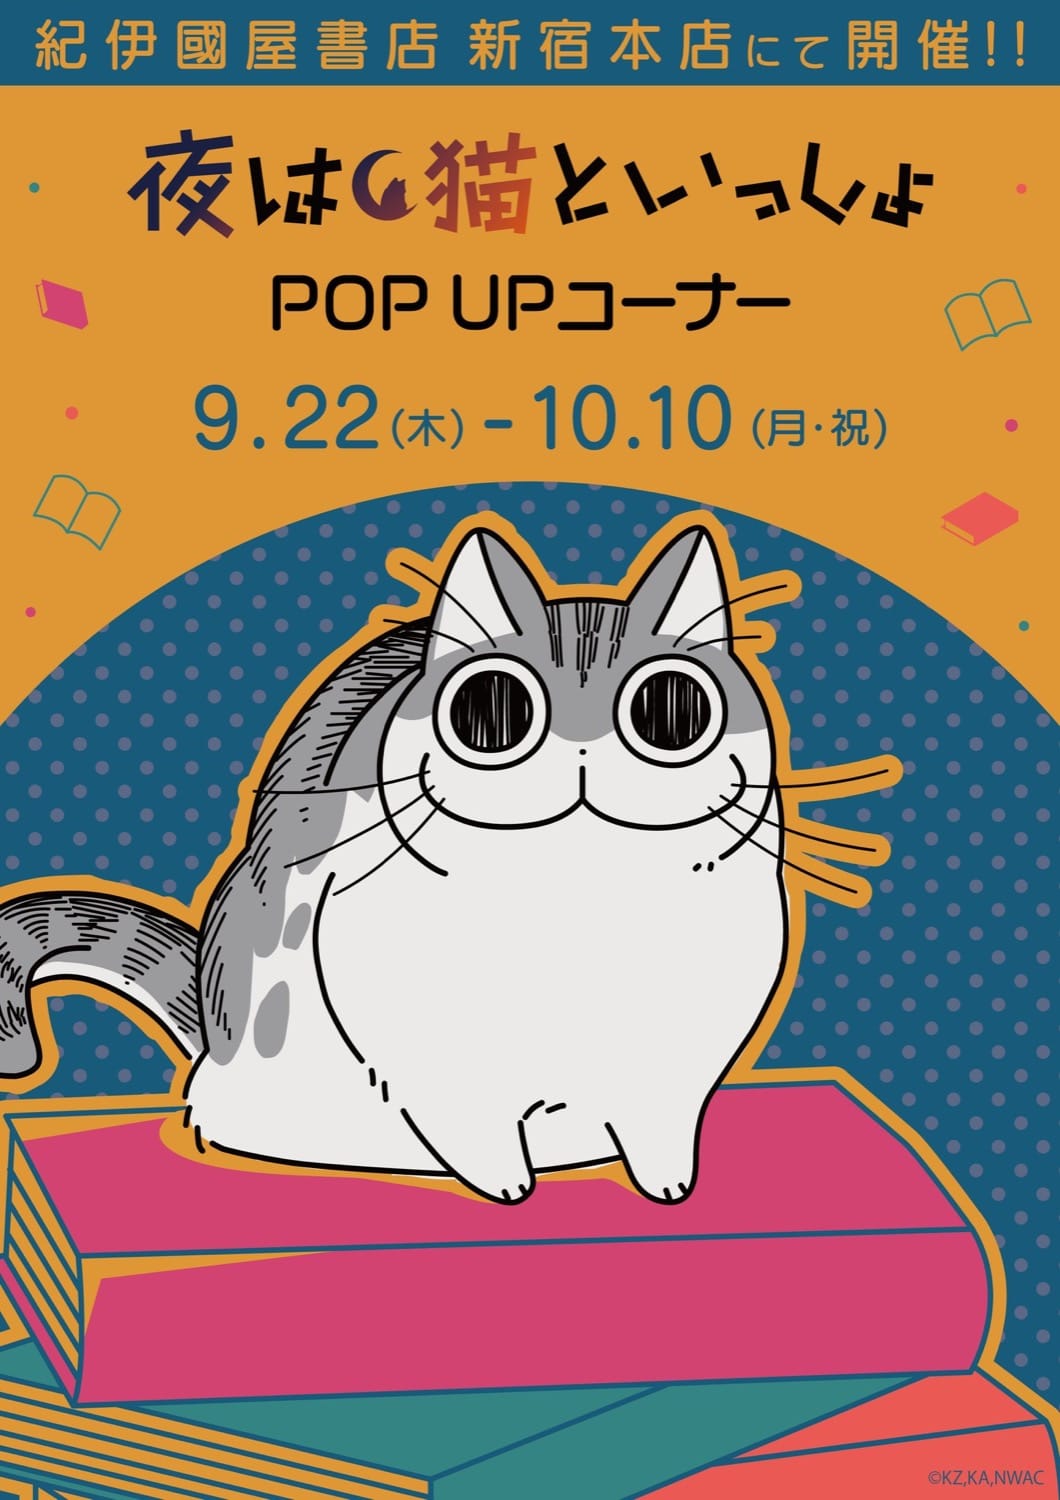 夜は猫といっしょ × A3 ポップアップ in 紀伊国屋新宿 9月22日より開催!